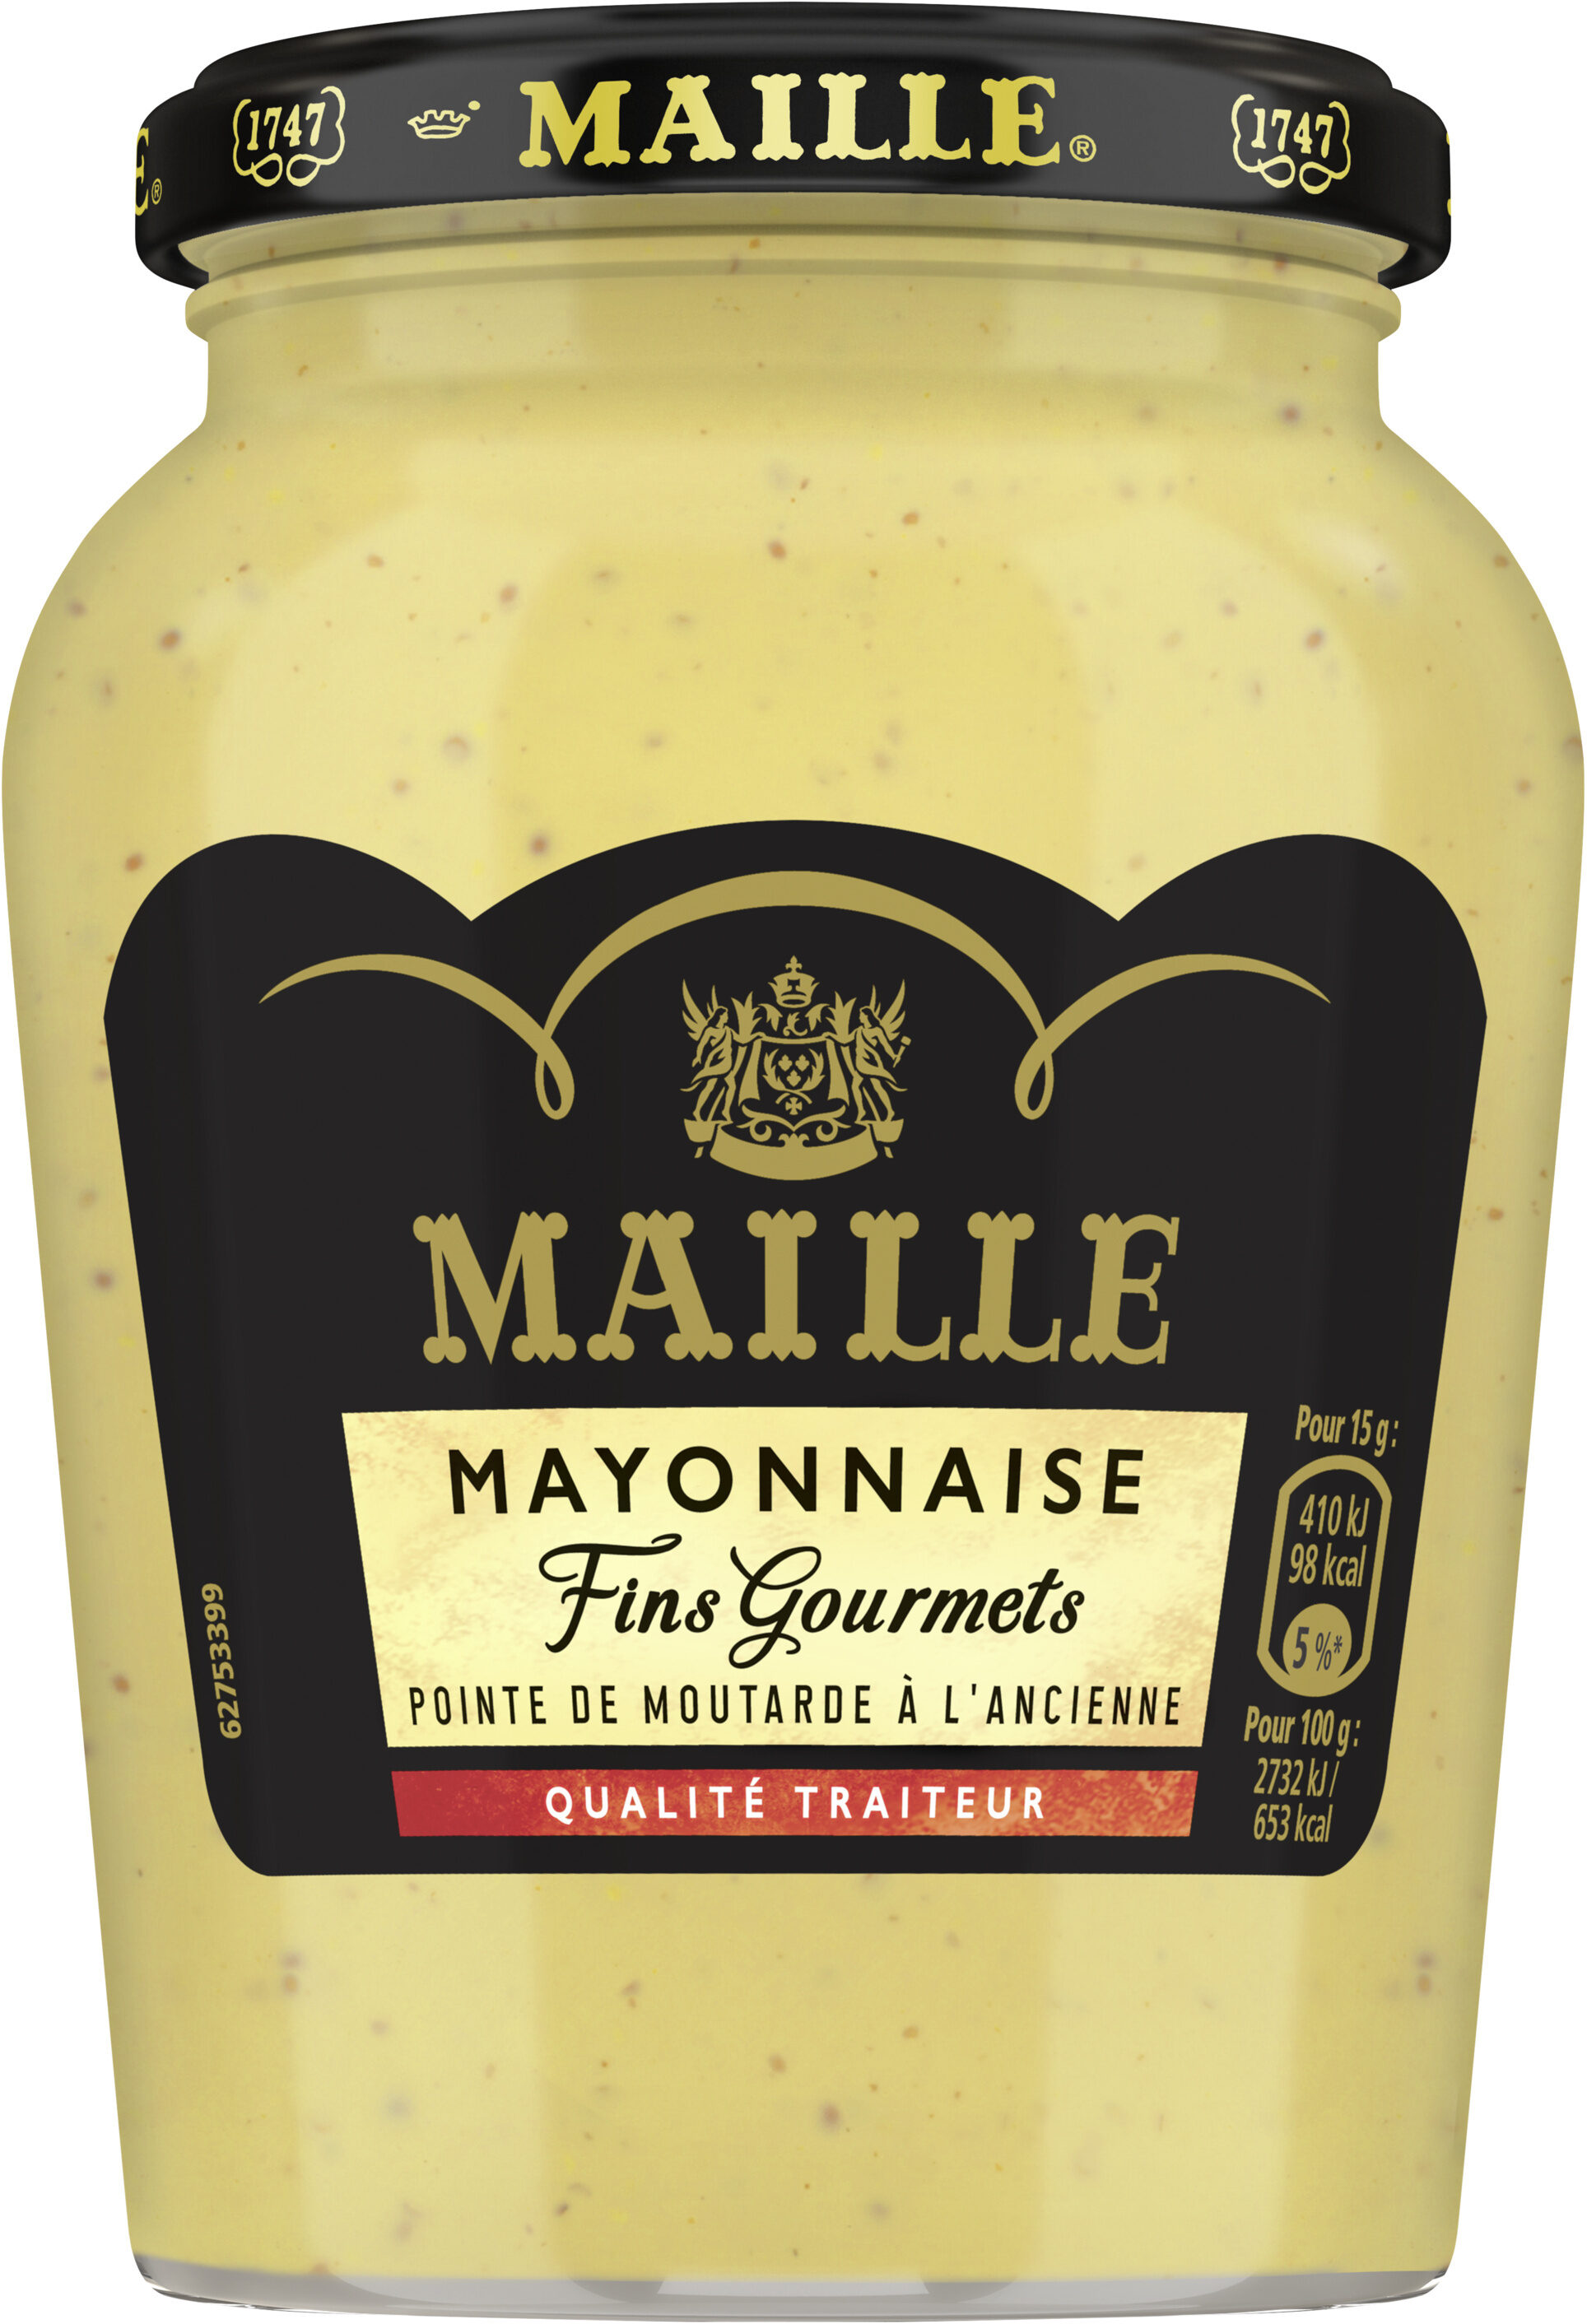 Maille mayo fg 320g - Produit